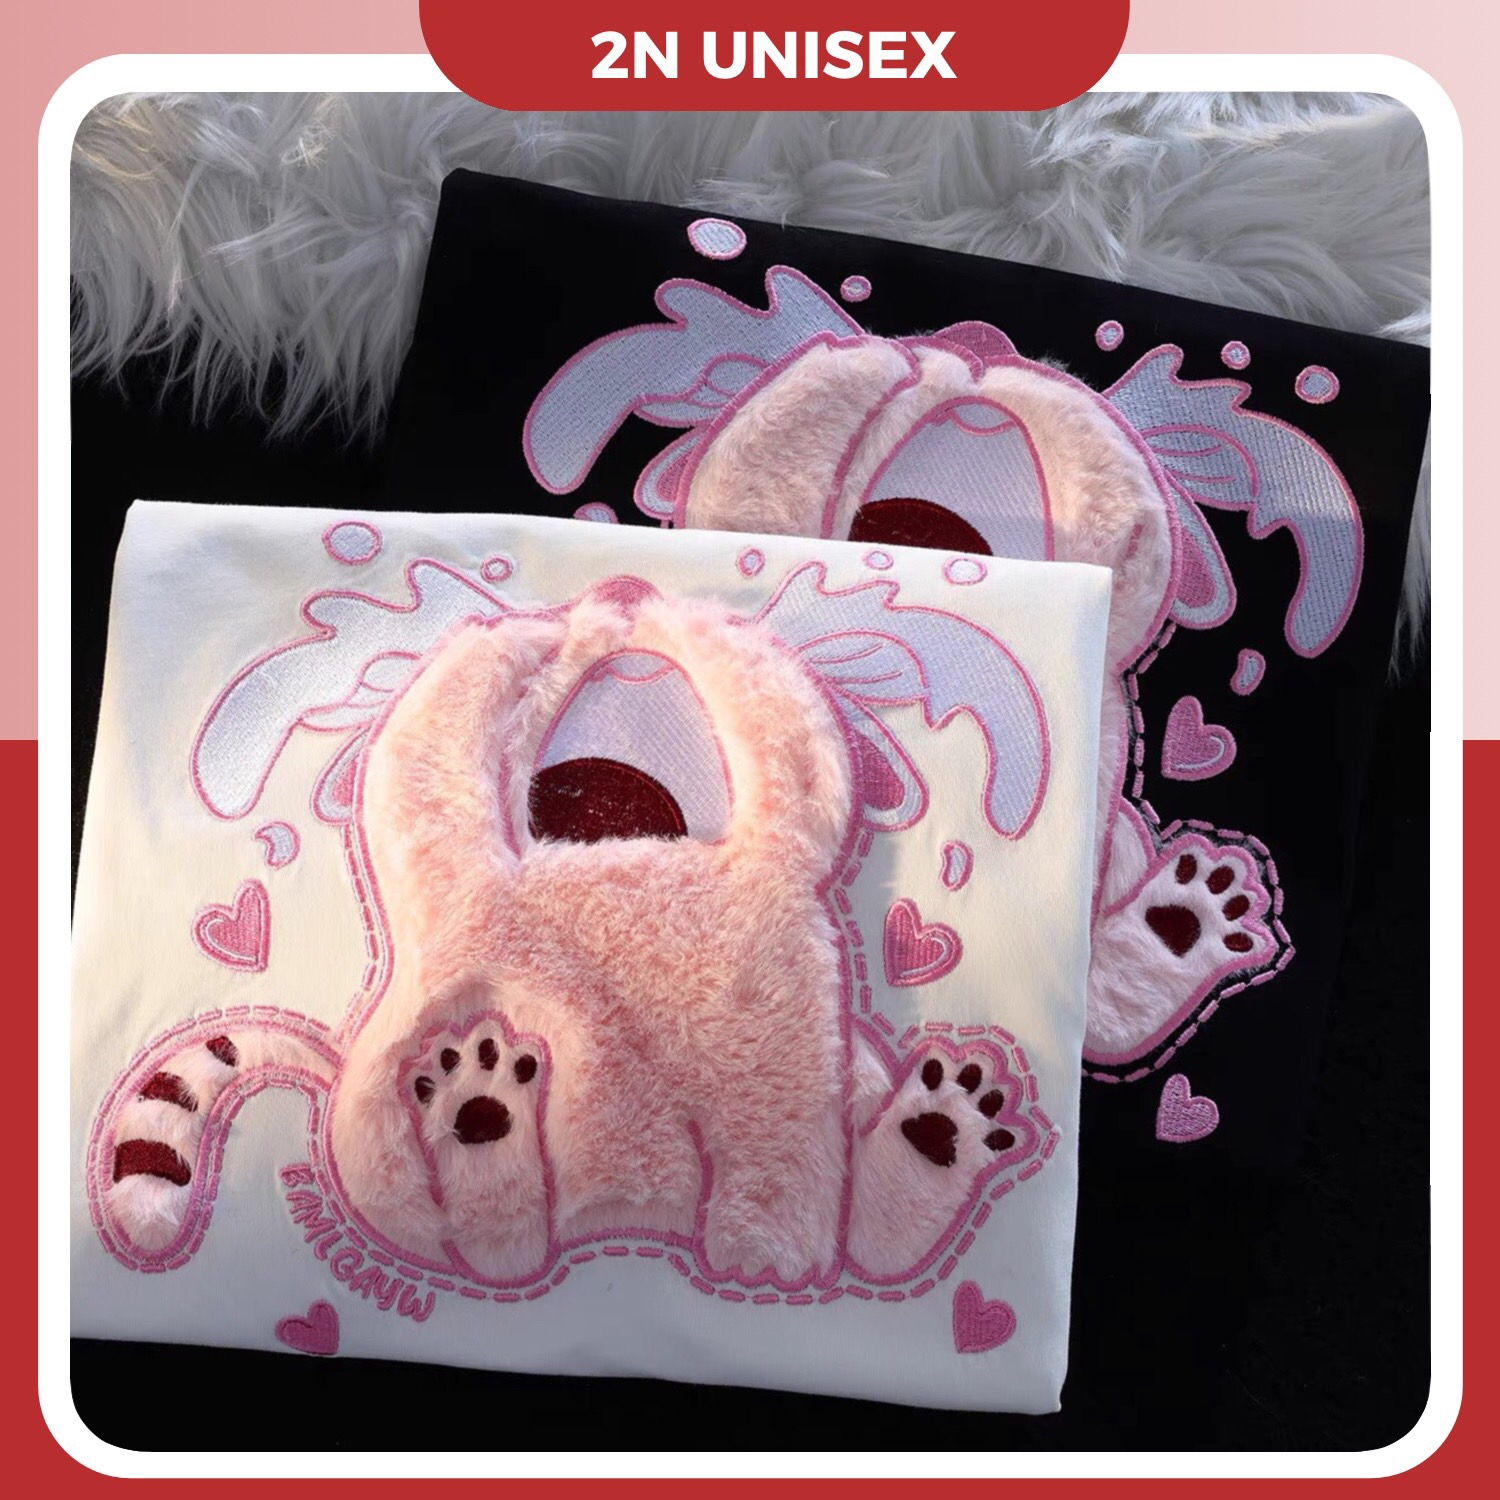 Áo phông nam nữ form rộng 2N Unisex thun cotton in hình mèo hồng thêu lông màu trắng/đen